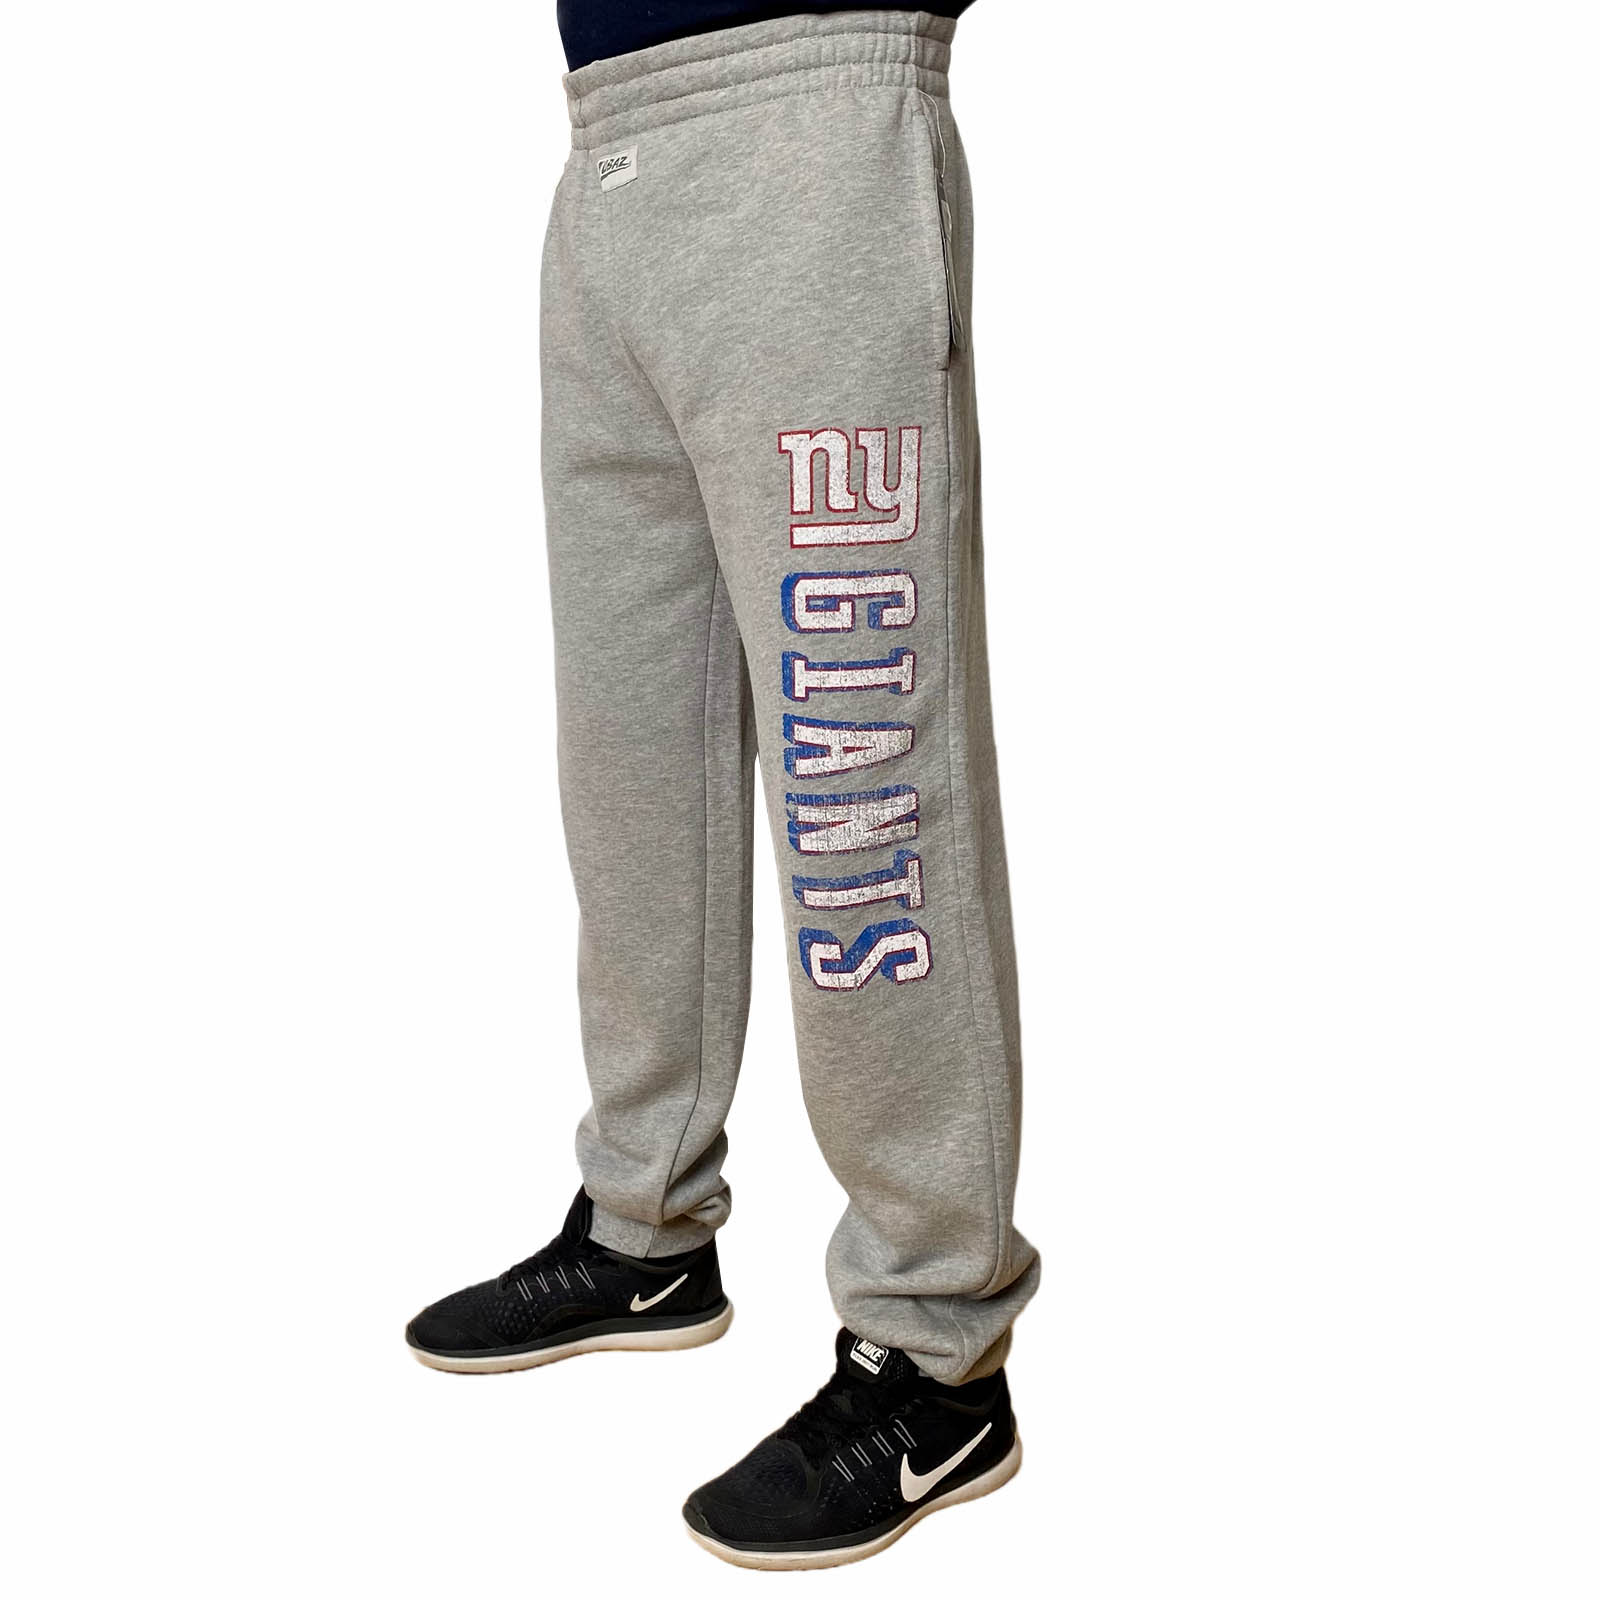 Заказать в интернет магазине мужские штаны Team Apparel для спорта